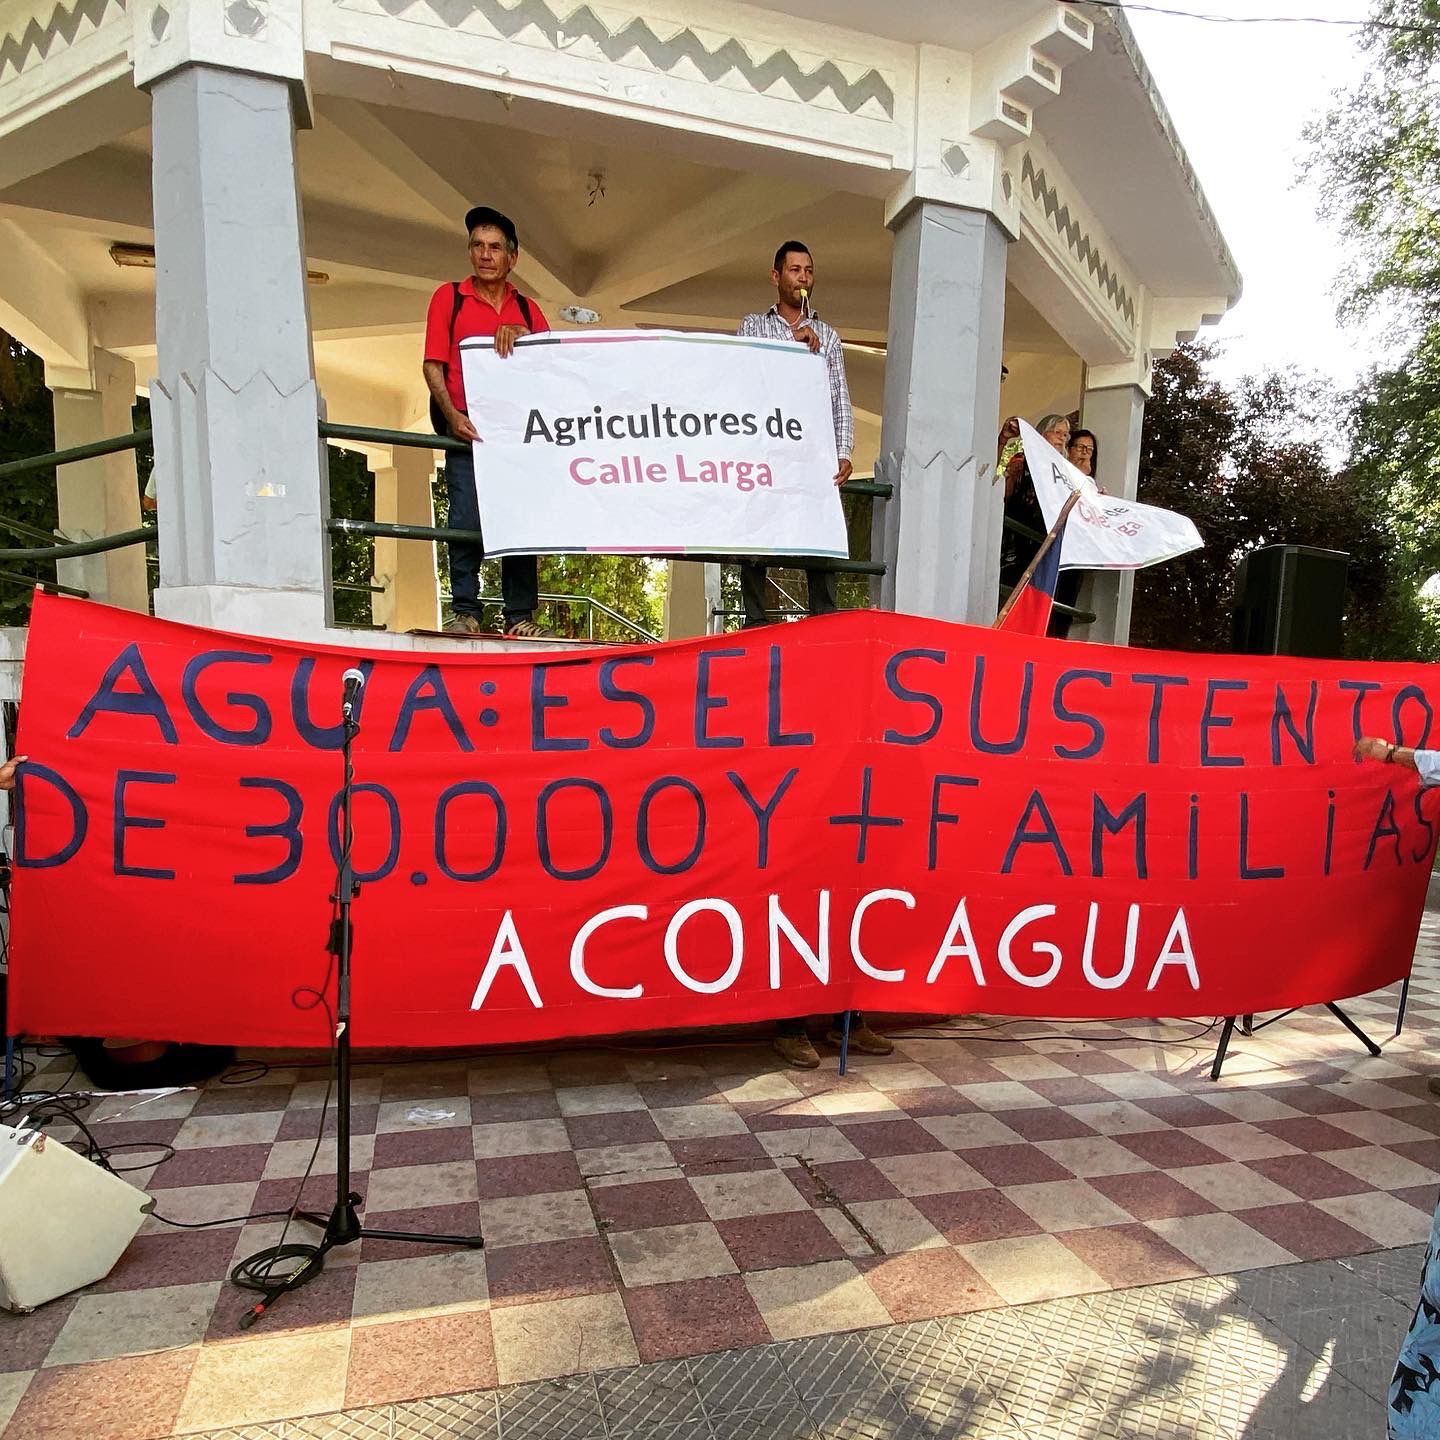 ACONCAGUA: Primera sección del Río Aconcagua lucha por restablecer el equilibrio de la cuenca 